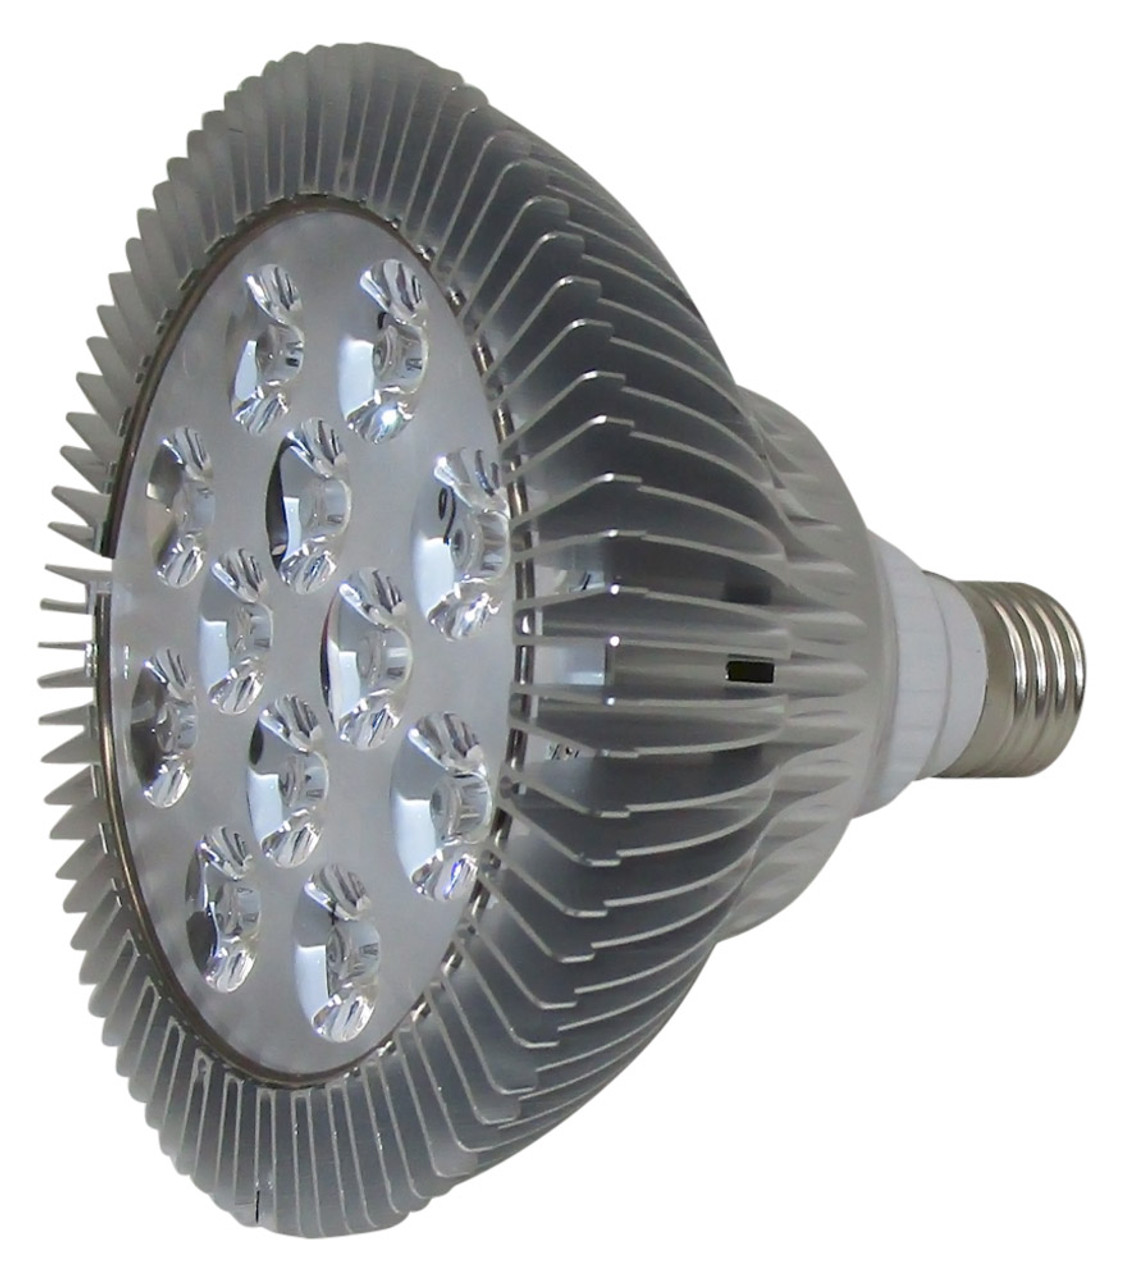 Beginner Reis Behoort BBB12W-395 twlve UV LED lamp emitting 395 NM light